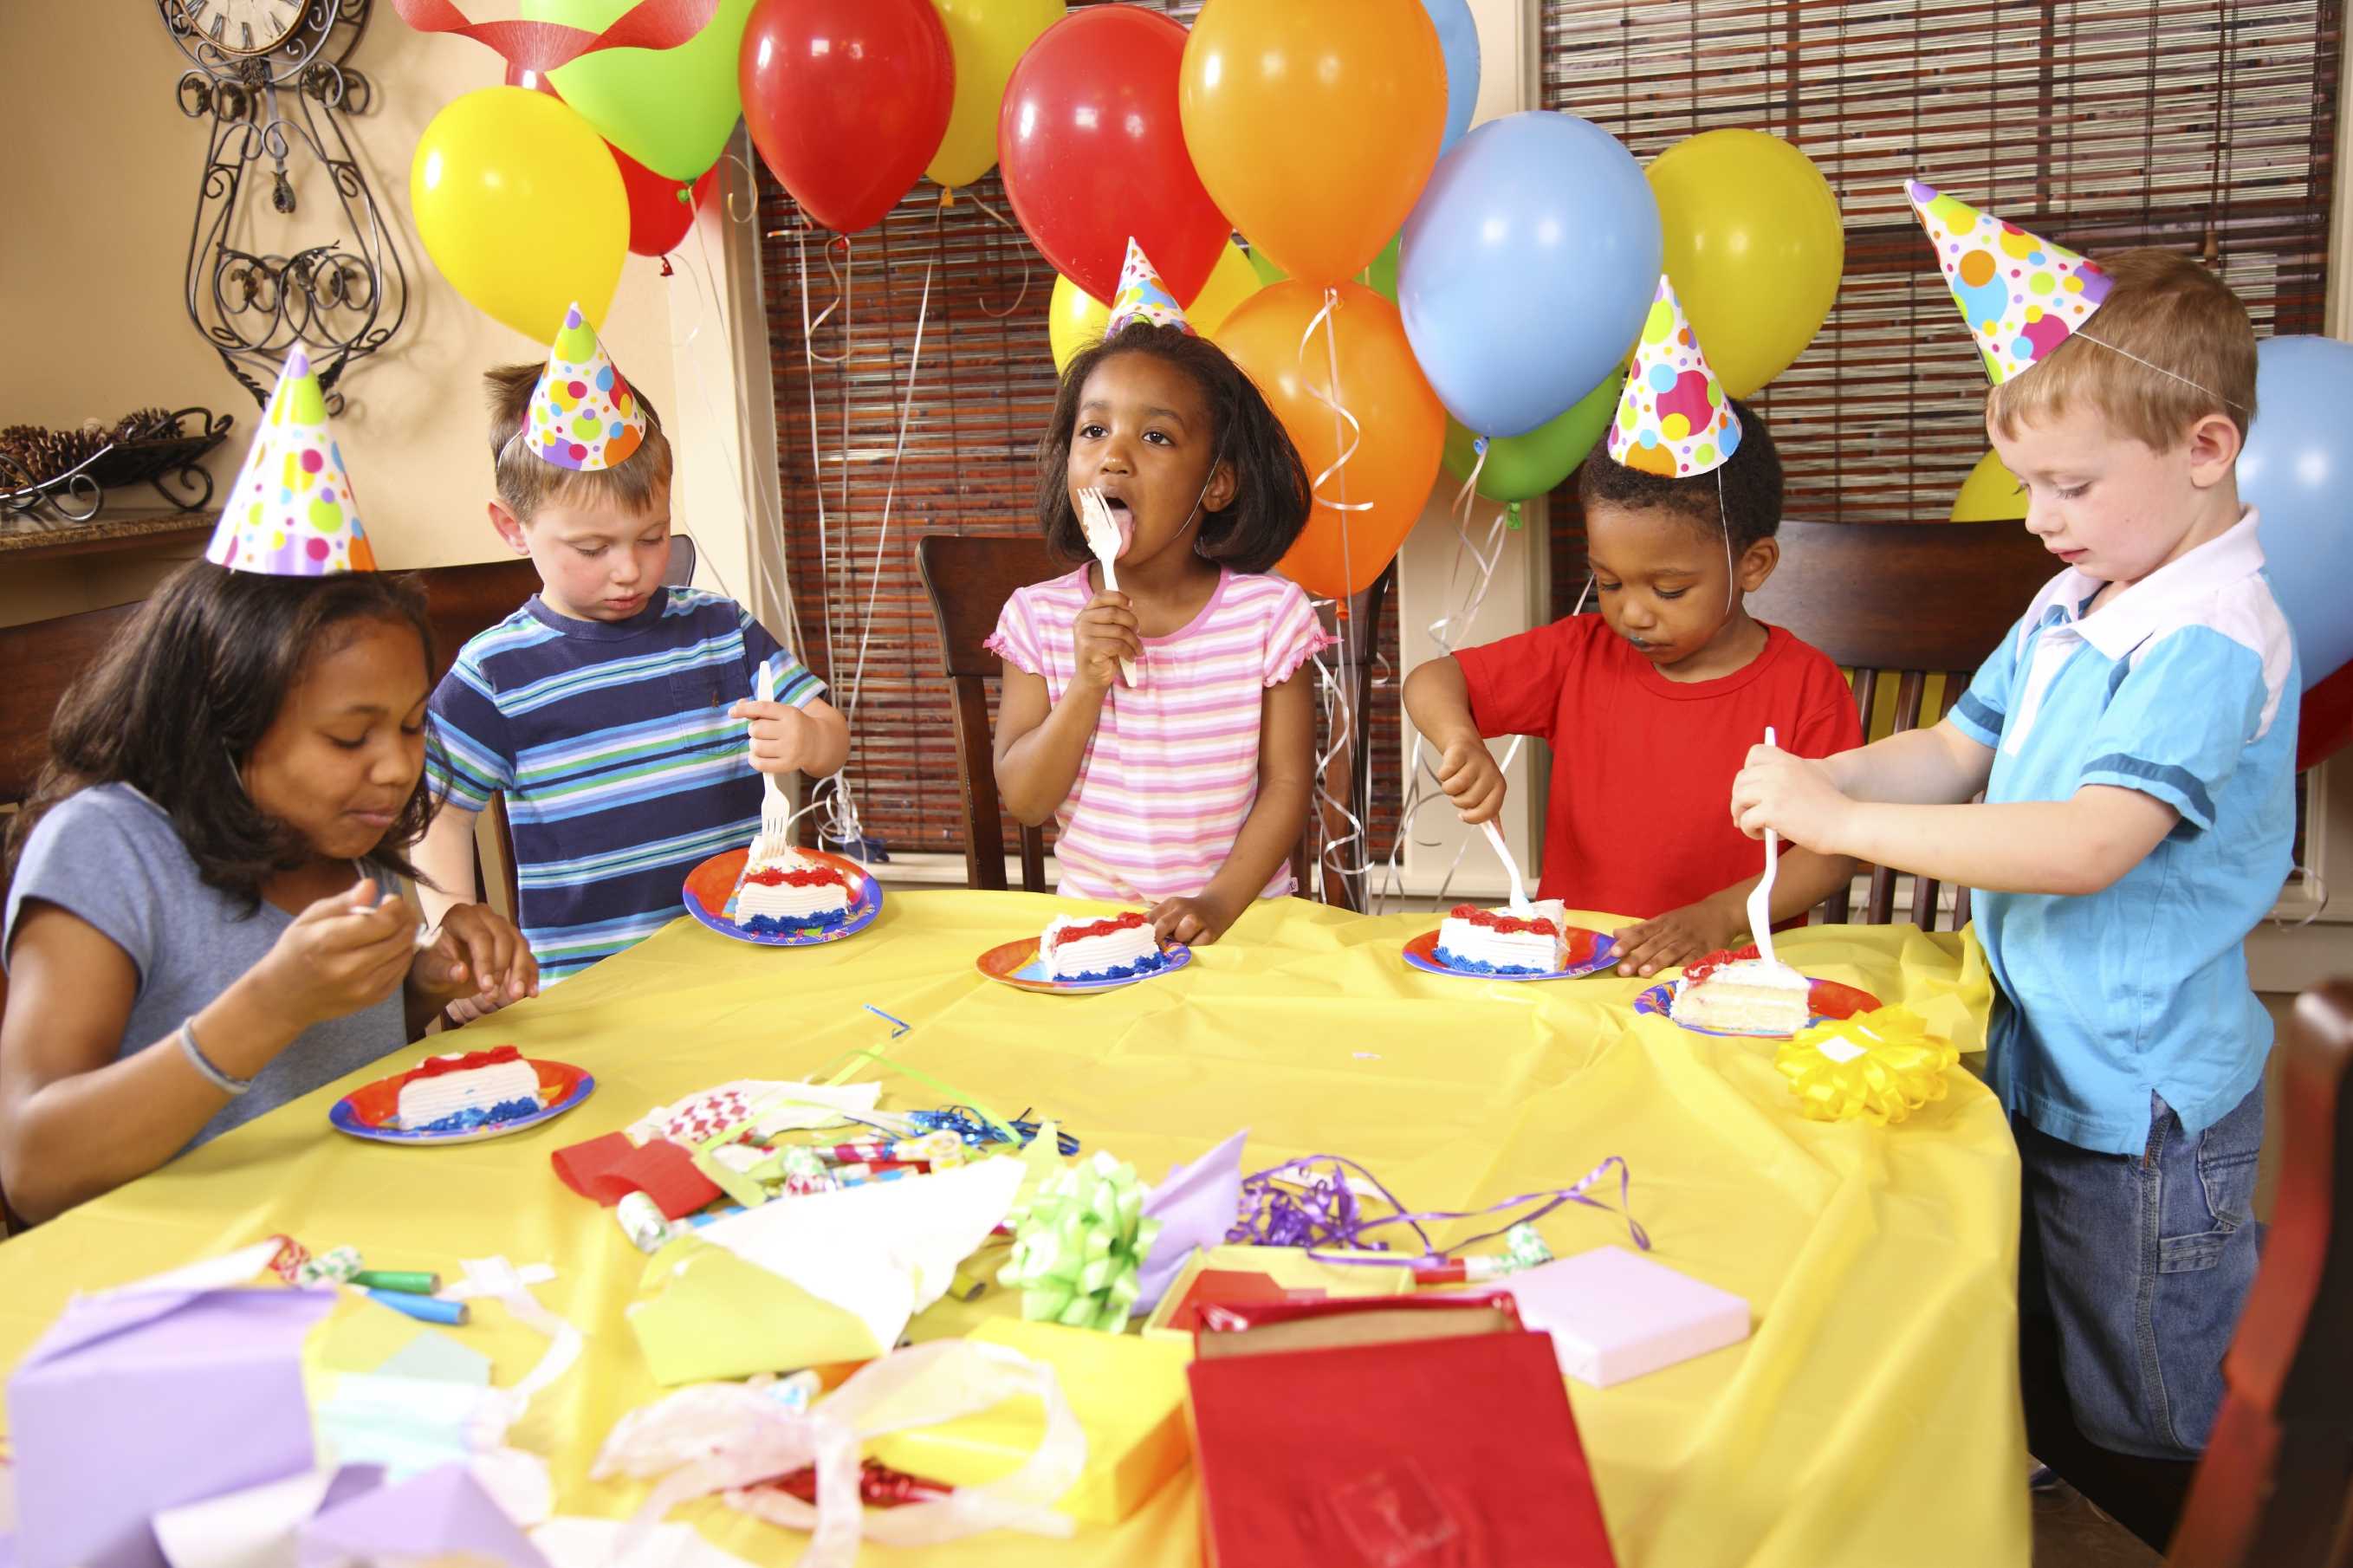 Отмечаем день рождения весело: лучшие игры и конкурсы для детей разного возраста